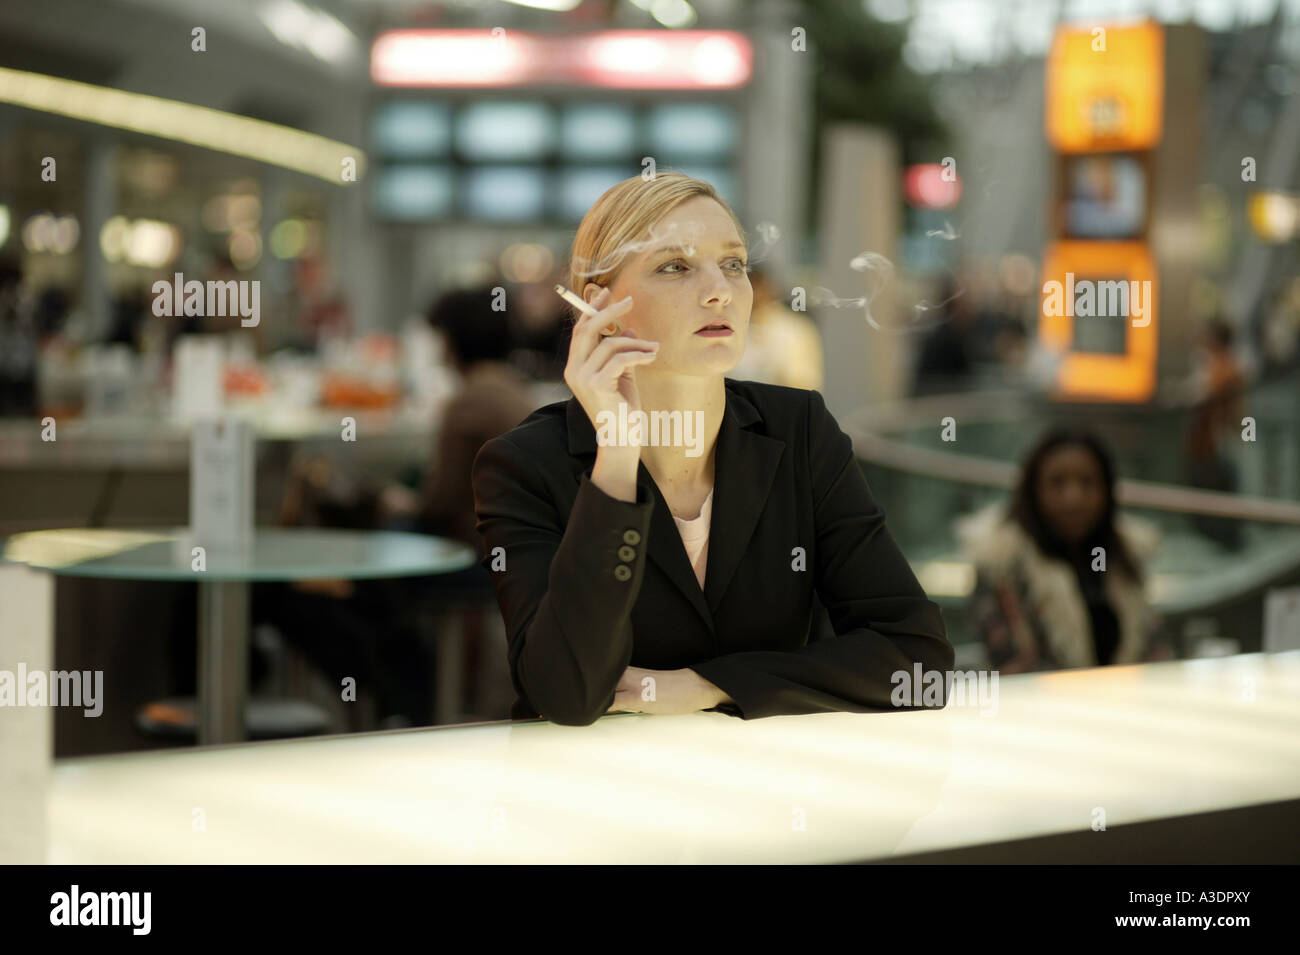 Young woman smoking at an airport café Stock Photo